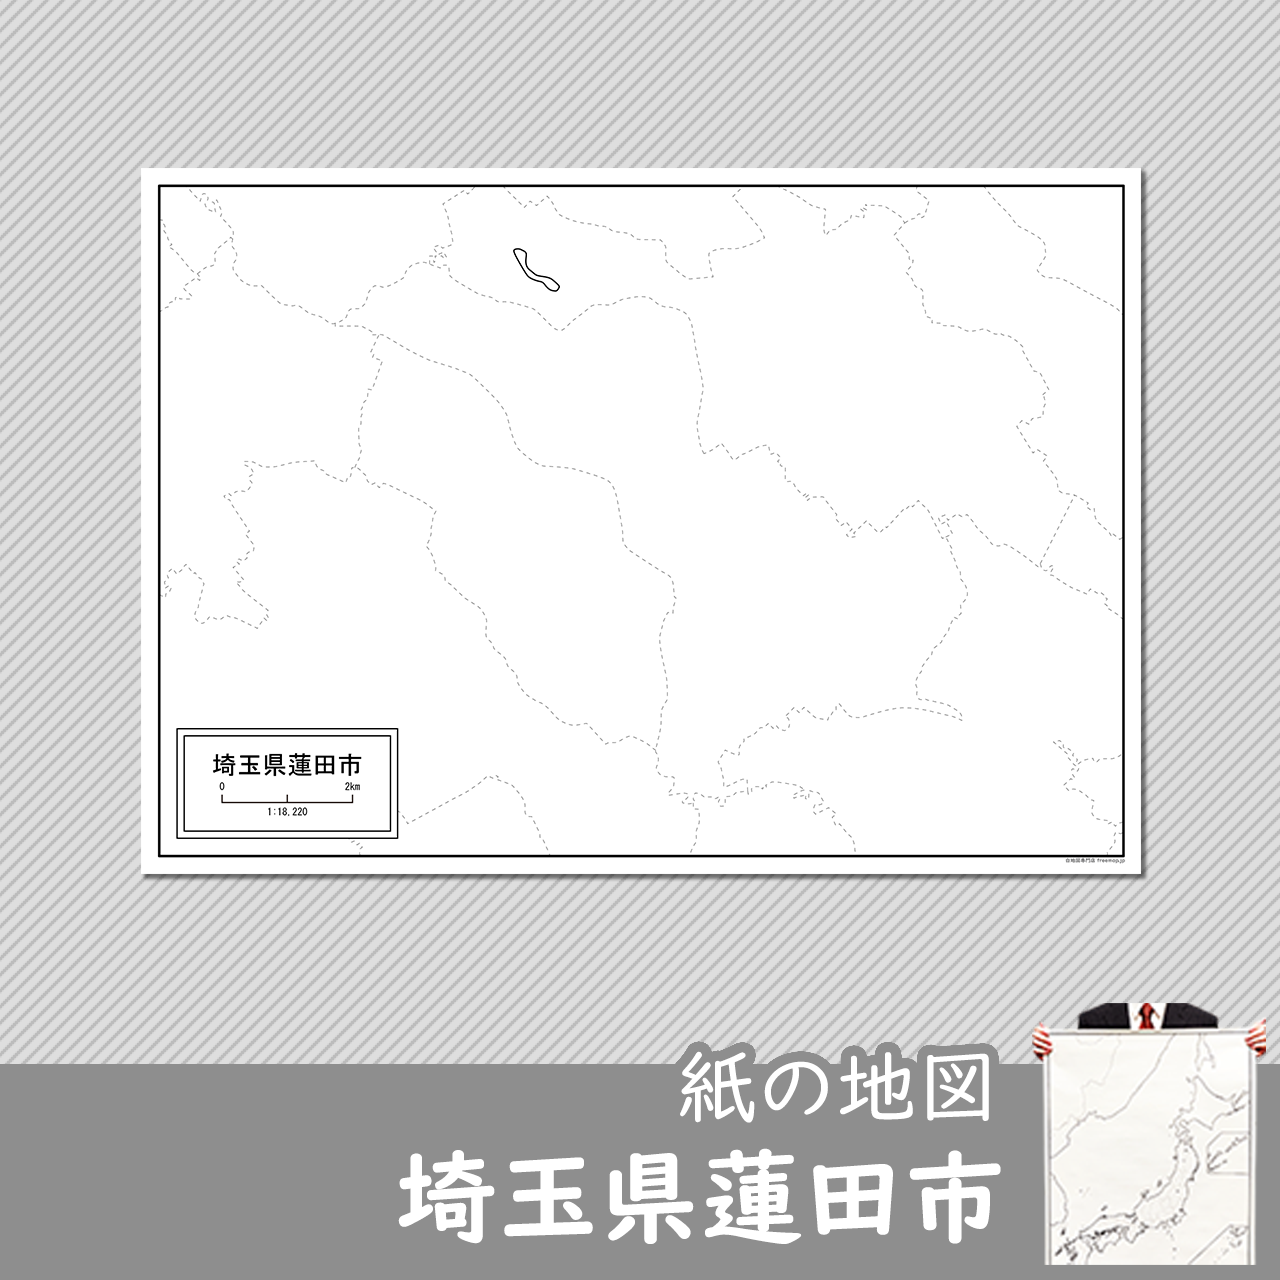 蓮田市の紙の白地図のサムネイル